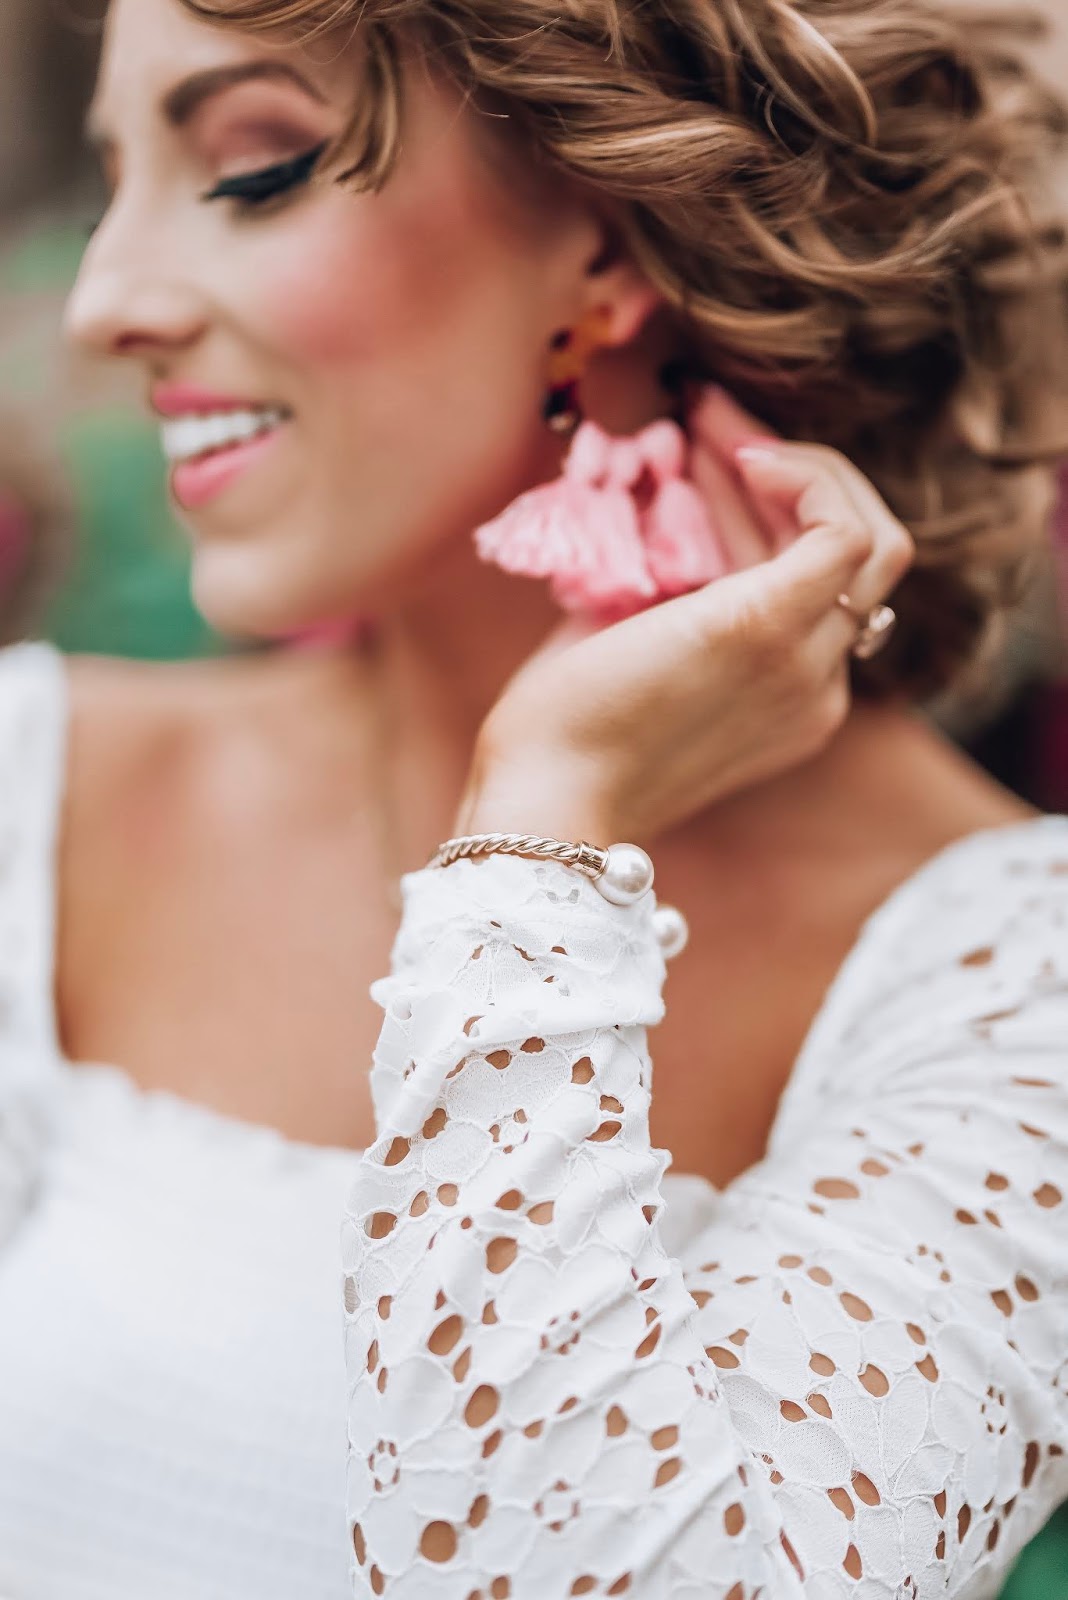 Under $100 Pink Skort + Lace Sleeve Top + Pink Tassel Earrings in Charleston - Something Delightful Blog  #springstyle #summerstyle